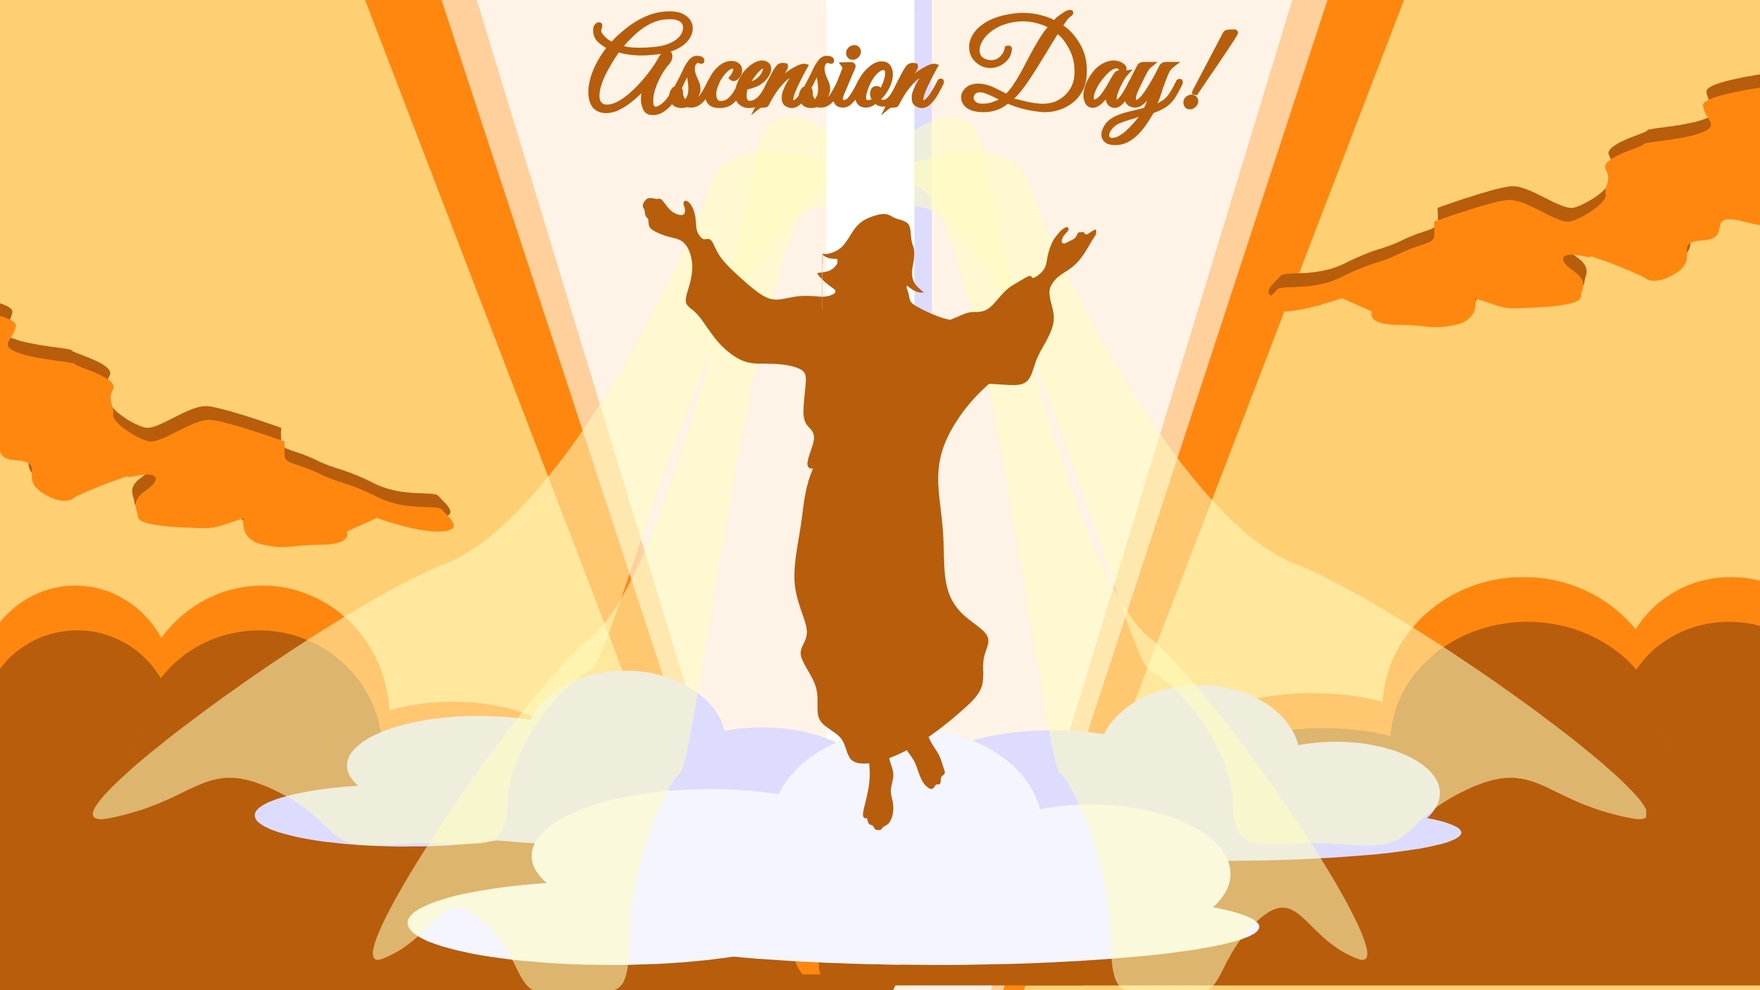 Ascension Day Design Background in EPS, Illustrator, JPG, PNG, PSD, PDF